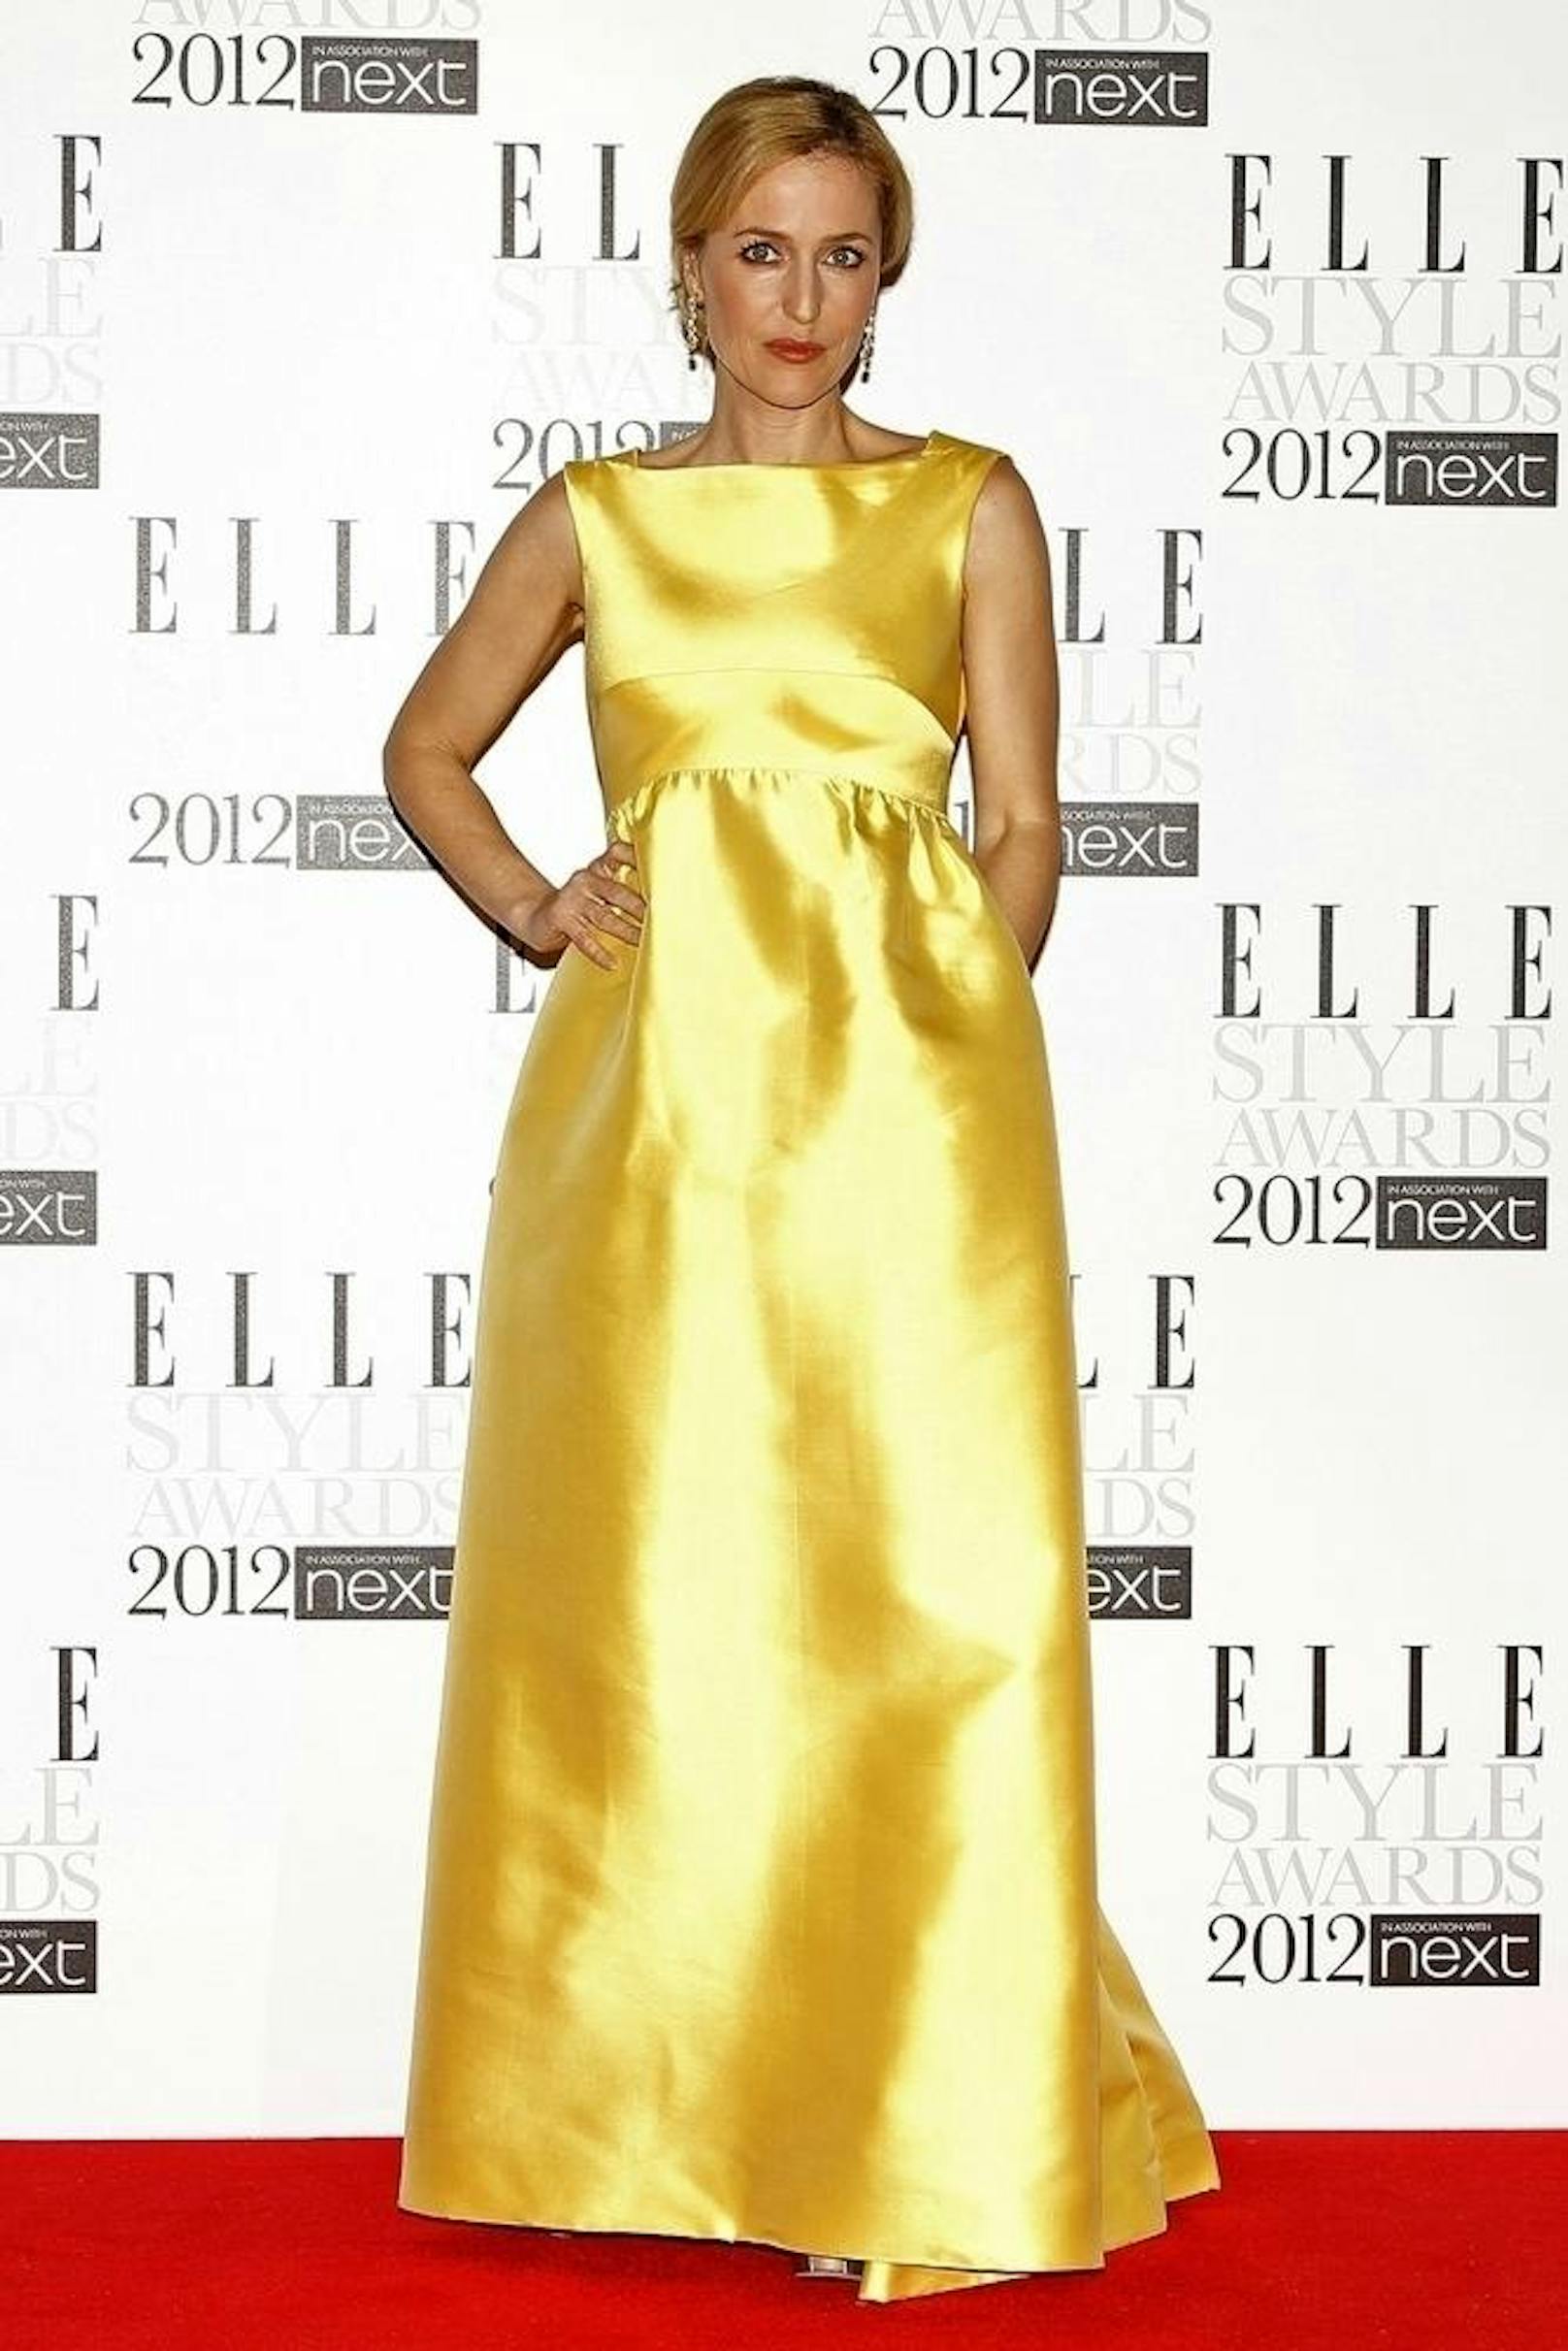 Gillian Anderson in strahlendem Gelb - Design von Sarmi